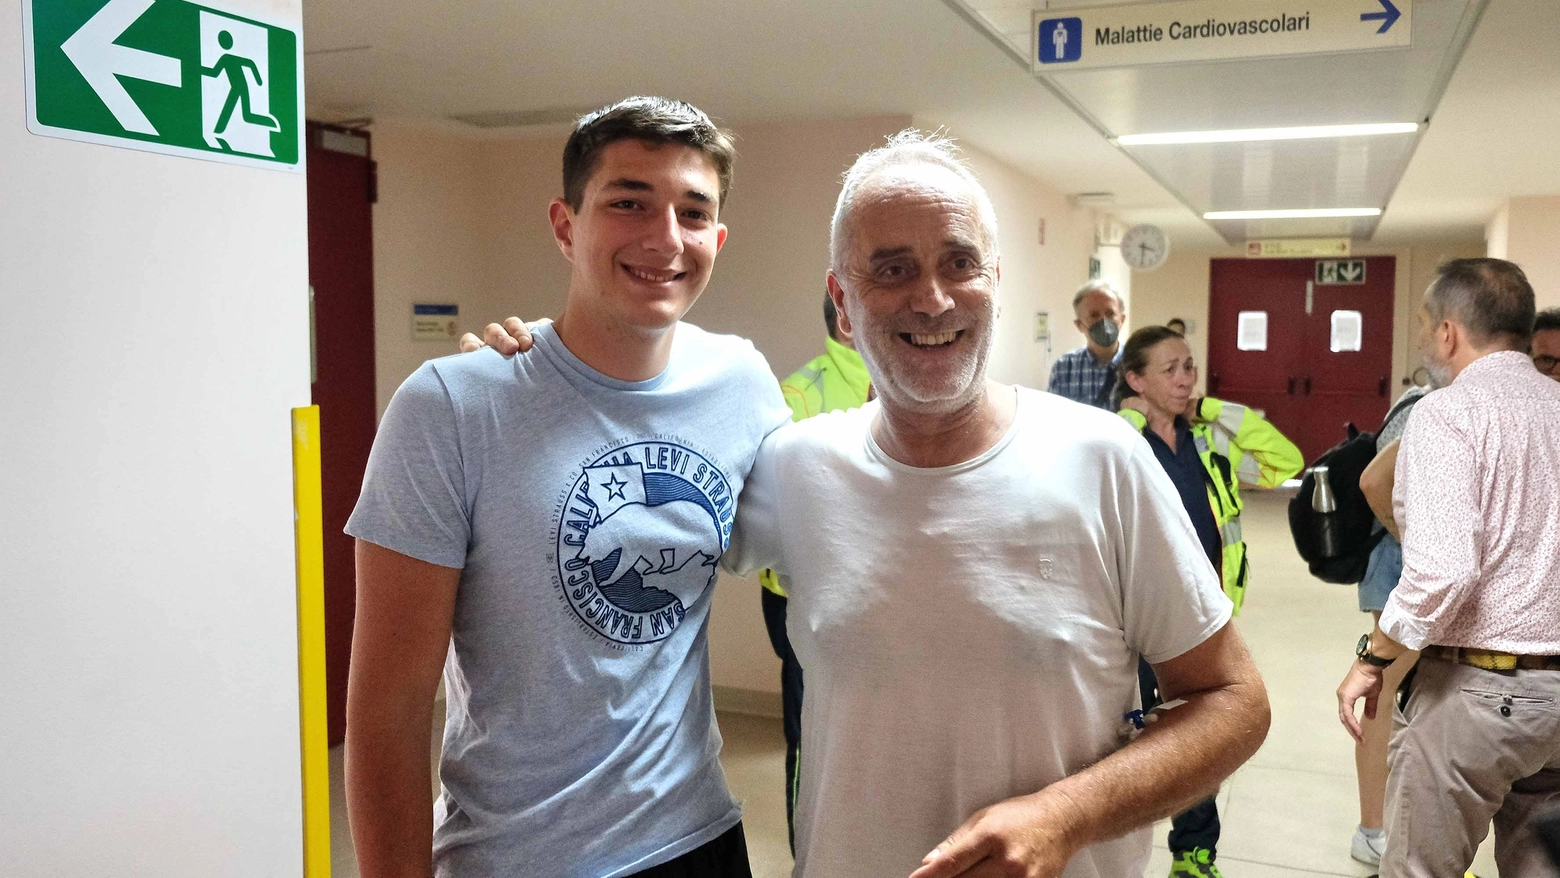 L'incontro in ospedale tra Alessandro, 16 anni, e Marcello, 50 anni (Foto Falsetti)